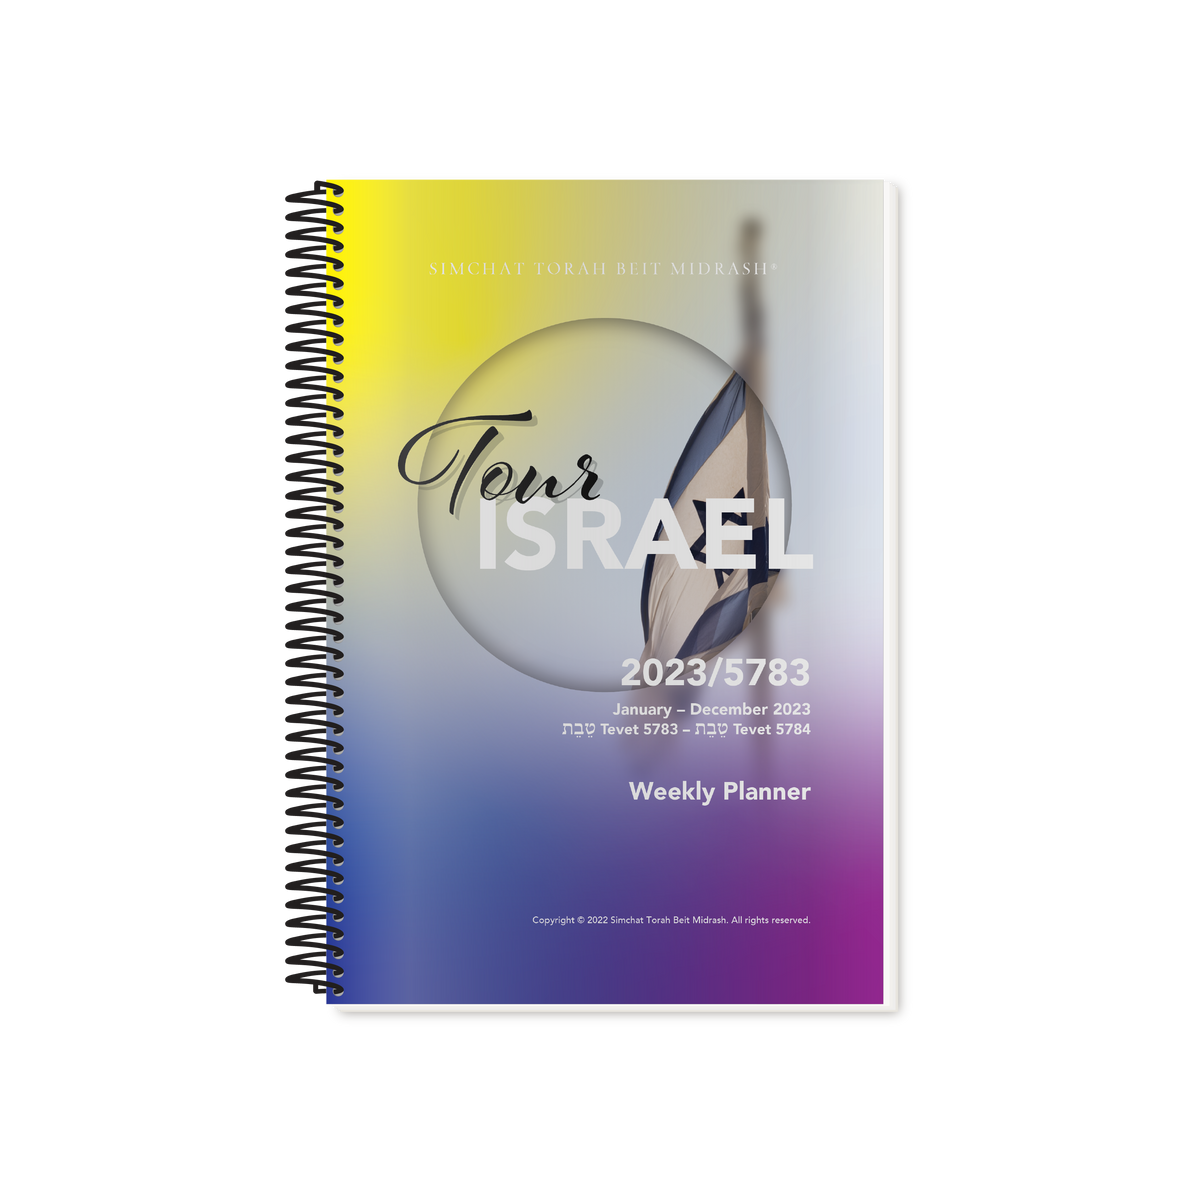 Tour Israel 2023 Weekly Planner